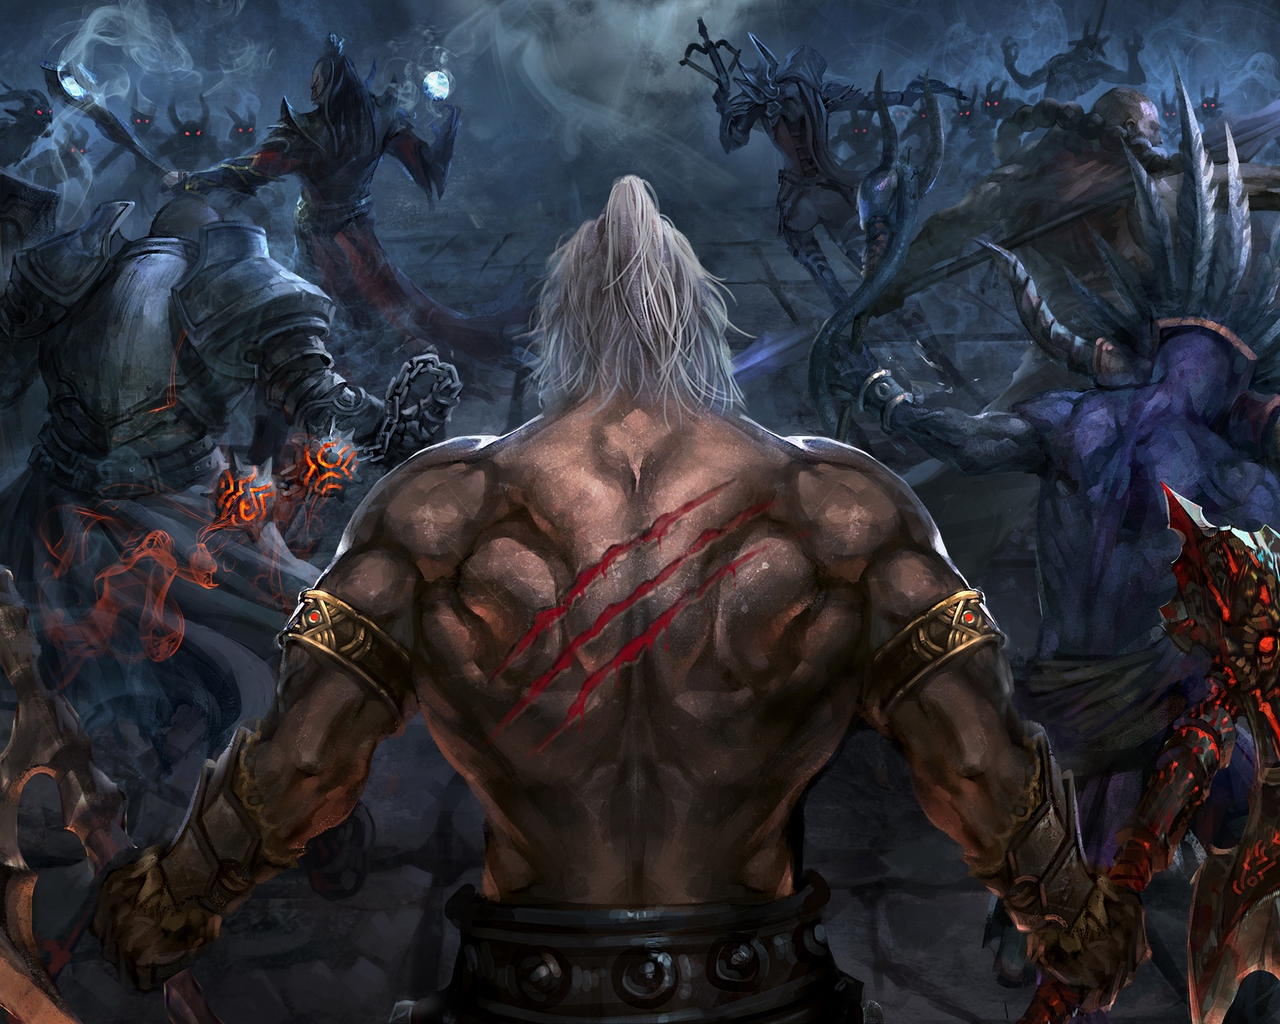 Diablo III Reaper of Souls for 1280 x 1024 resolution